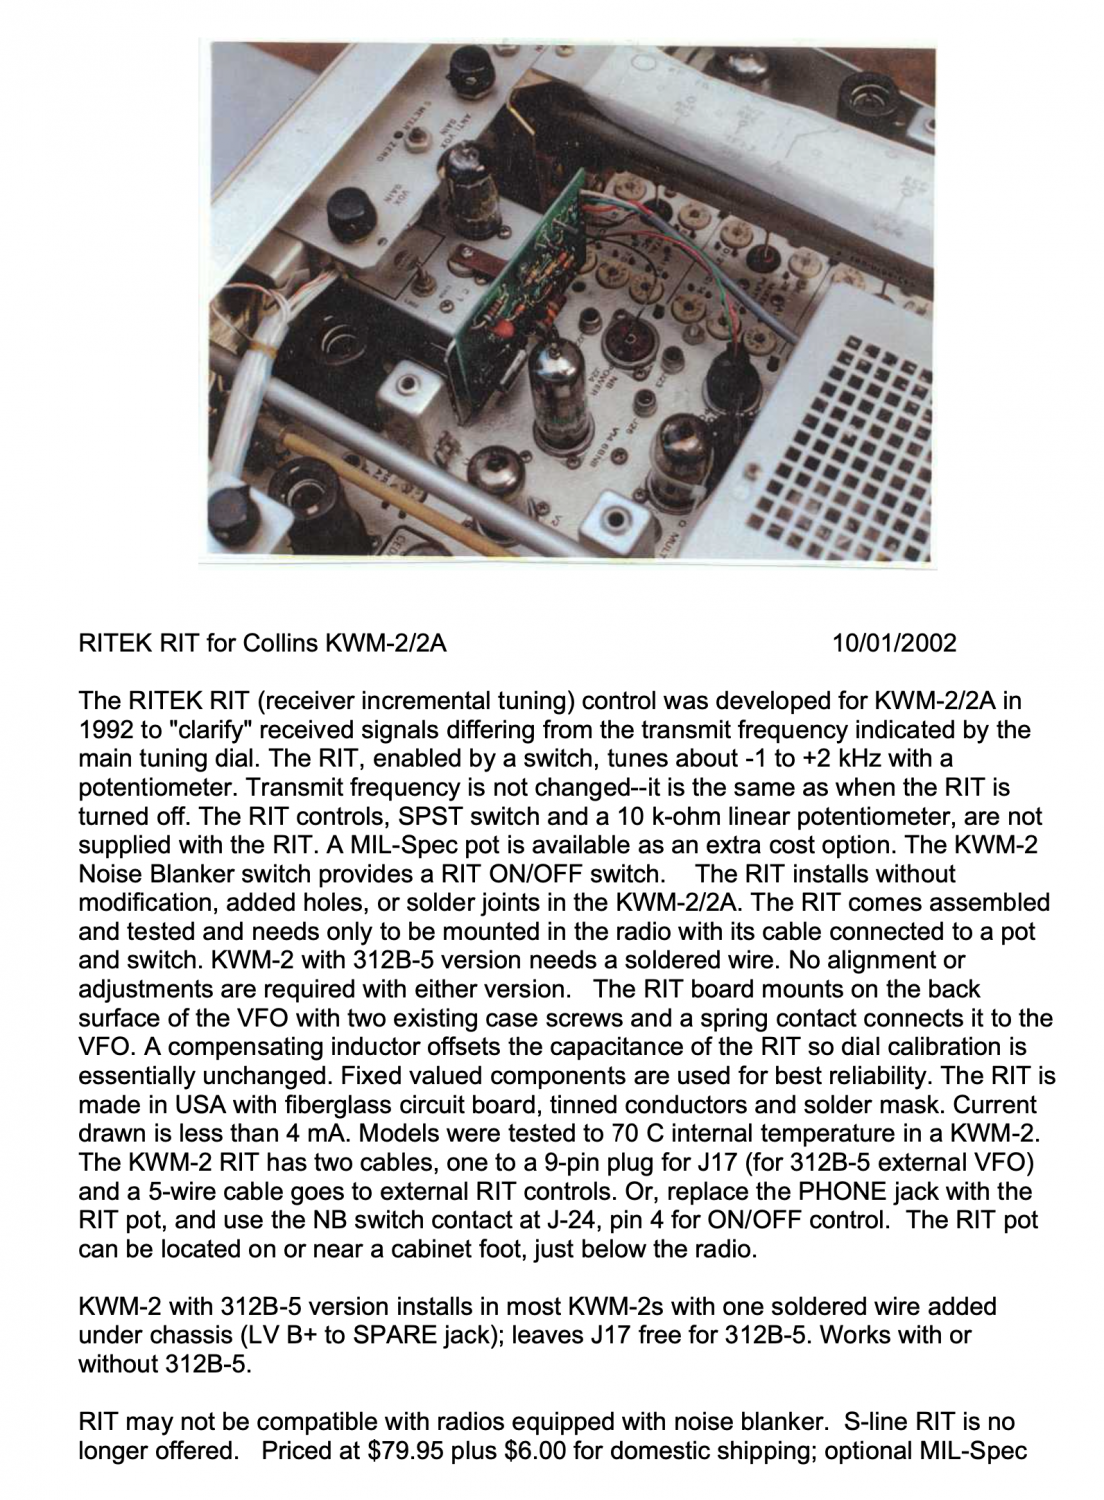 Collins KWM-2 Transceiver - Information on the RITEK RIT (2002-01)